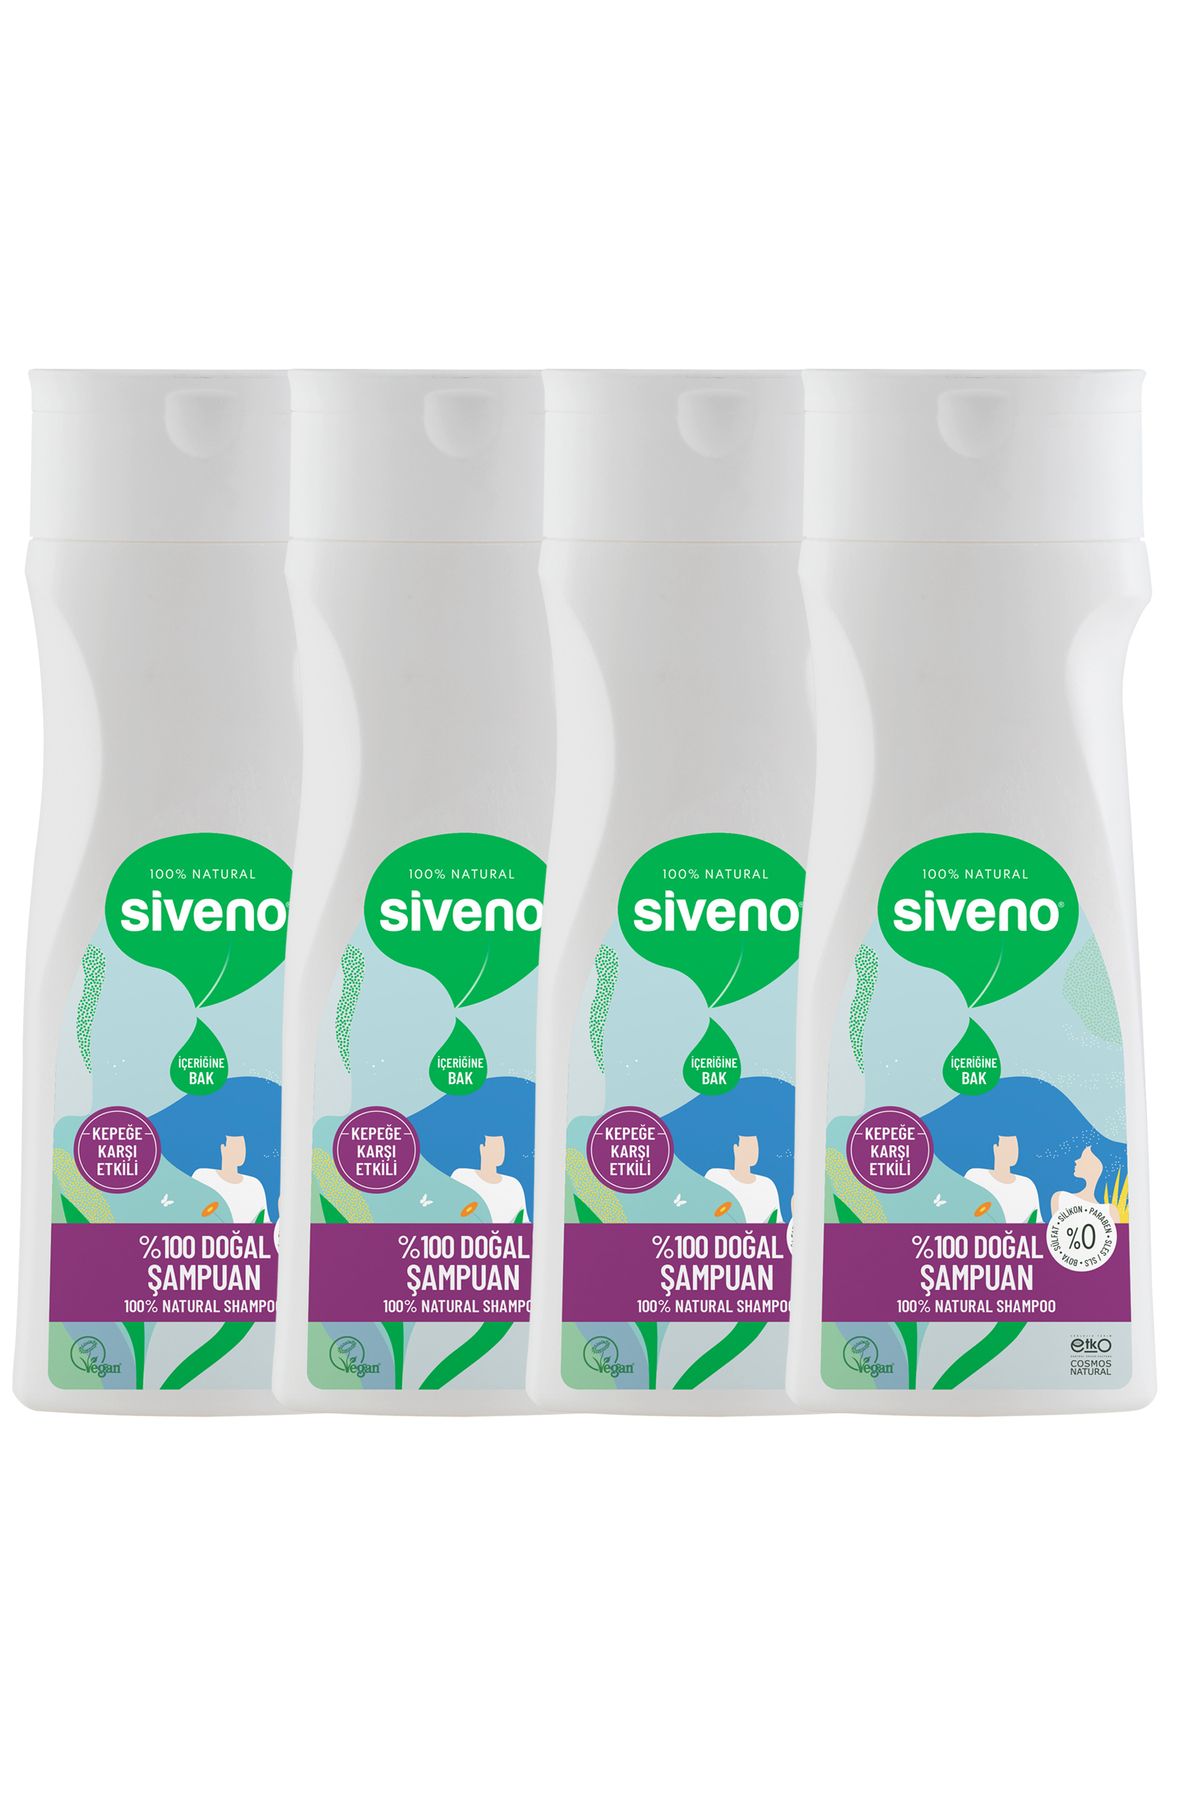 Siveno %100 Doğal Kepeğe Karşı Etkili Şampuan Yağlı Saçlar Çay Ağacı Keklik Üzümü Vegan 300 ml X 4 Adet